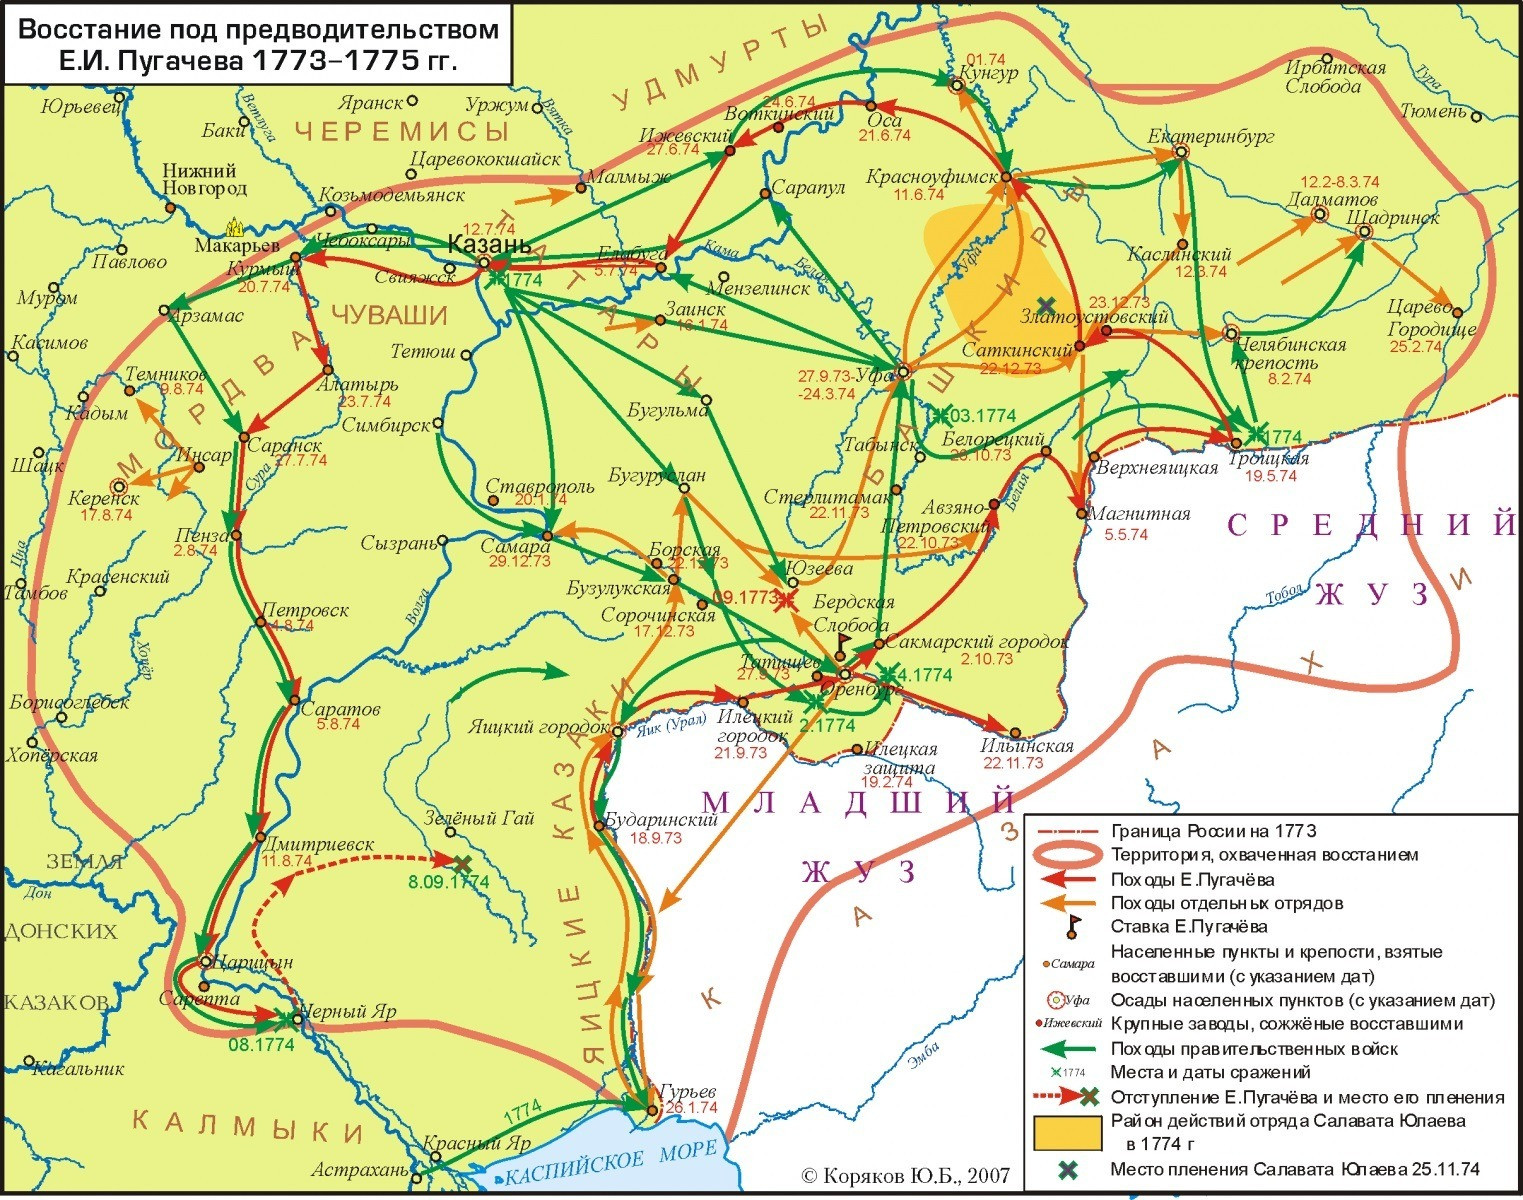 Карта восстания Пугачева 1773—1775 гг.